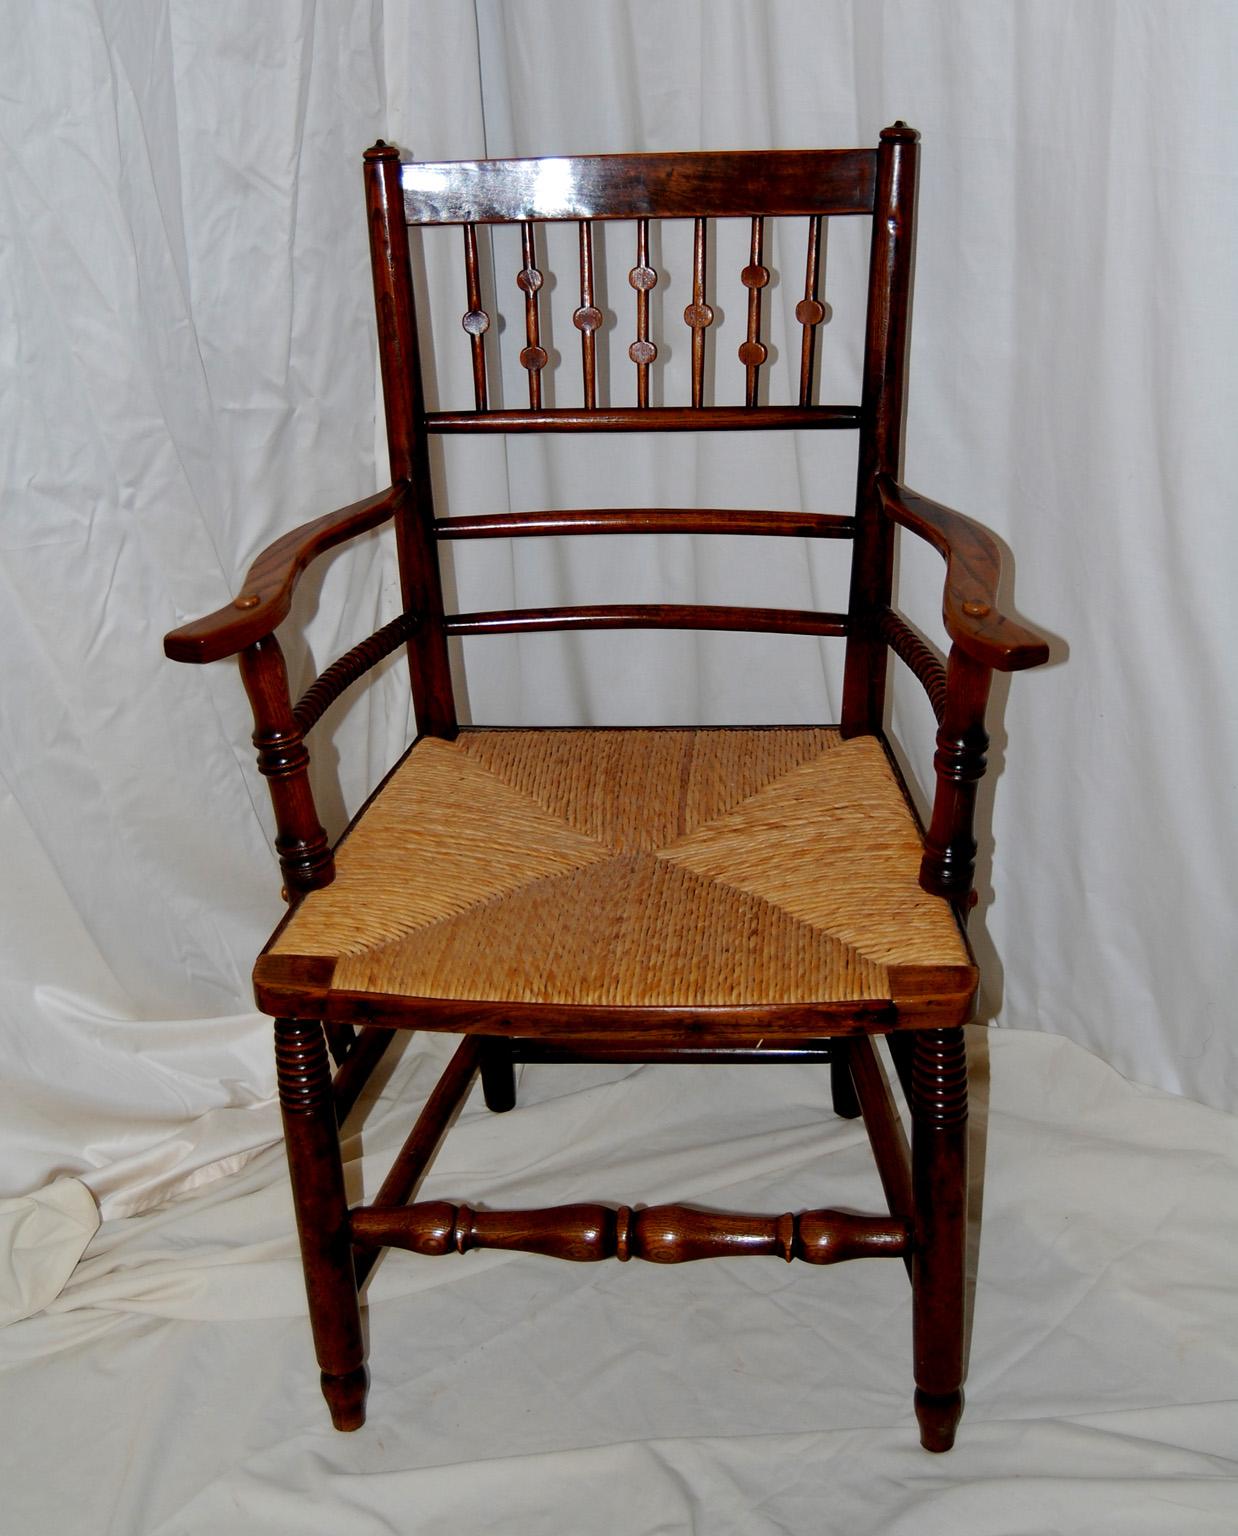  Englischer Arts and Crafts-Sessel mit Spindelrücken aus Ulme und Binsen.  Dieser Sessel hat ungewöhnliche abgeflachte Drehungen an der Rückenlehne und Klöppeldrehungen an der Lehne unter der Armlehne.  Die doppelten Box-Stretcher, die die Beine